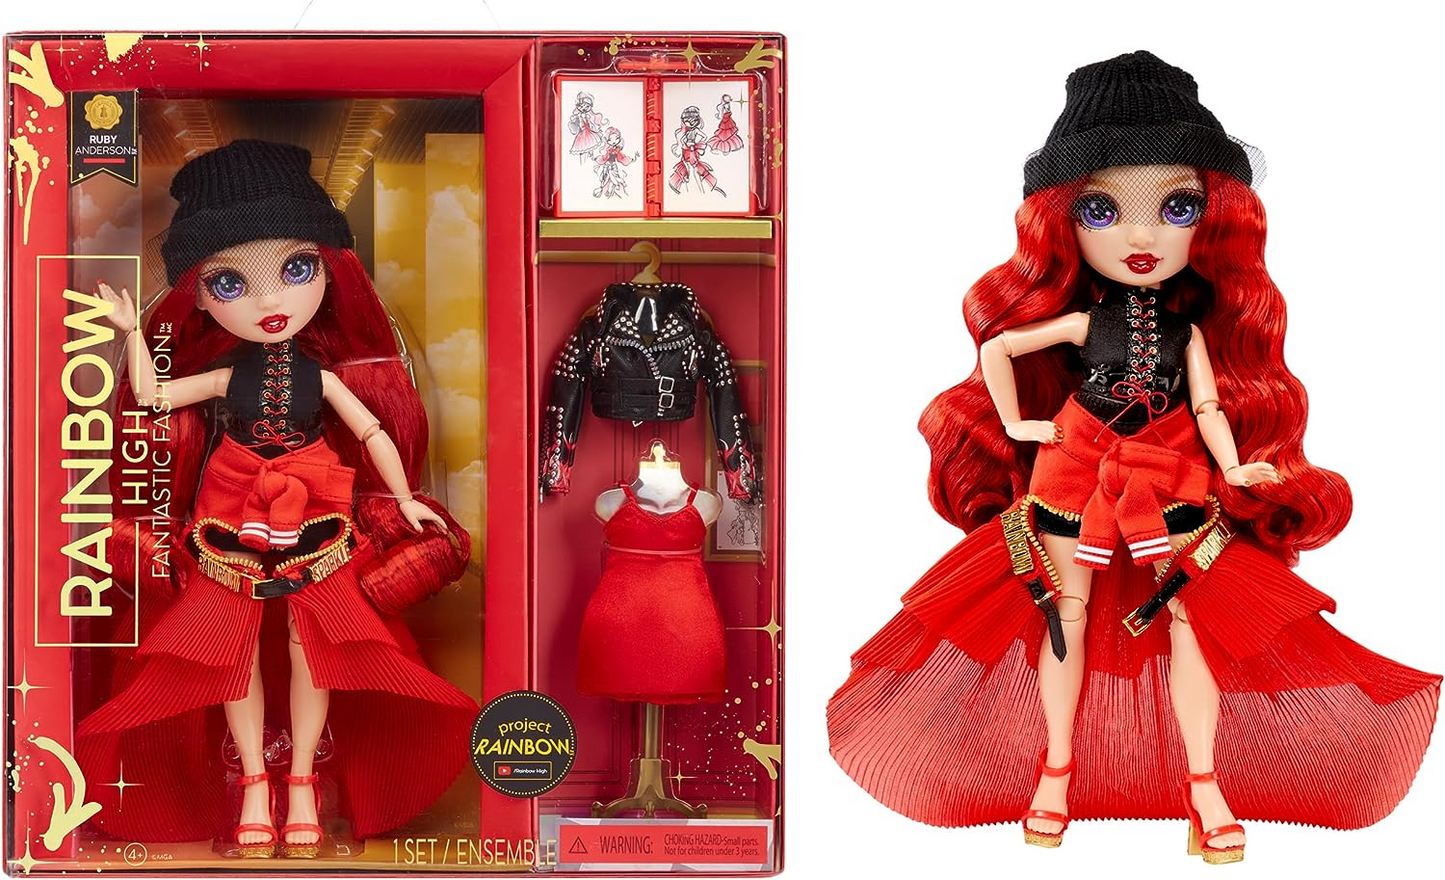 Rainbow High Fantástica boneca fashion - RUBY ANDERSON - Boneca fashion vermelha de 11" e conjunto de brinquedos com 2 roupas e acessórios de moda - Ótimo para crianças de 4 a 12 anos